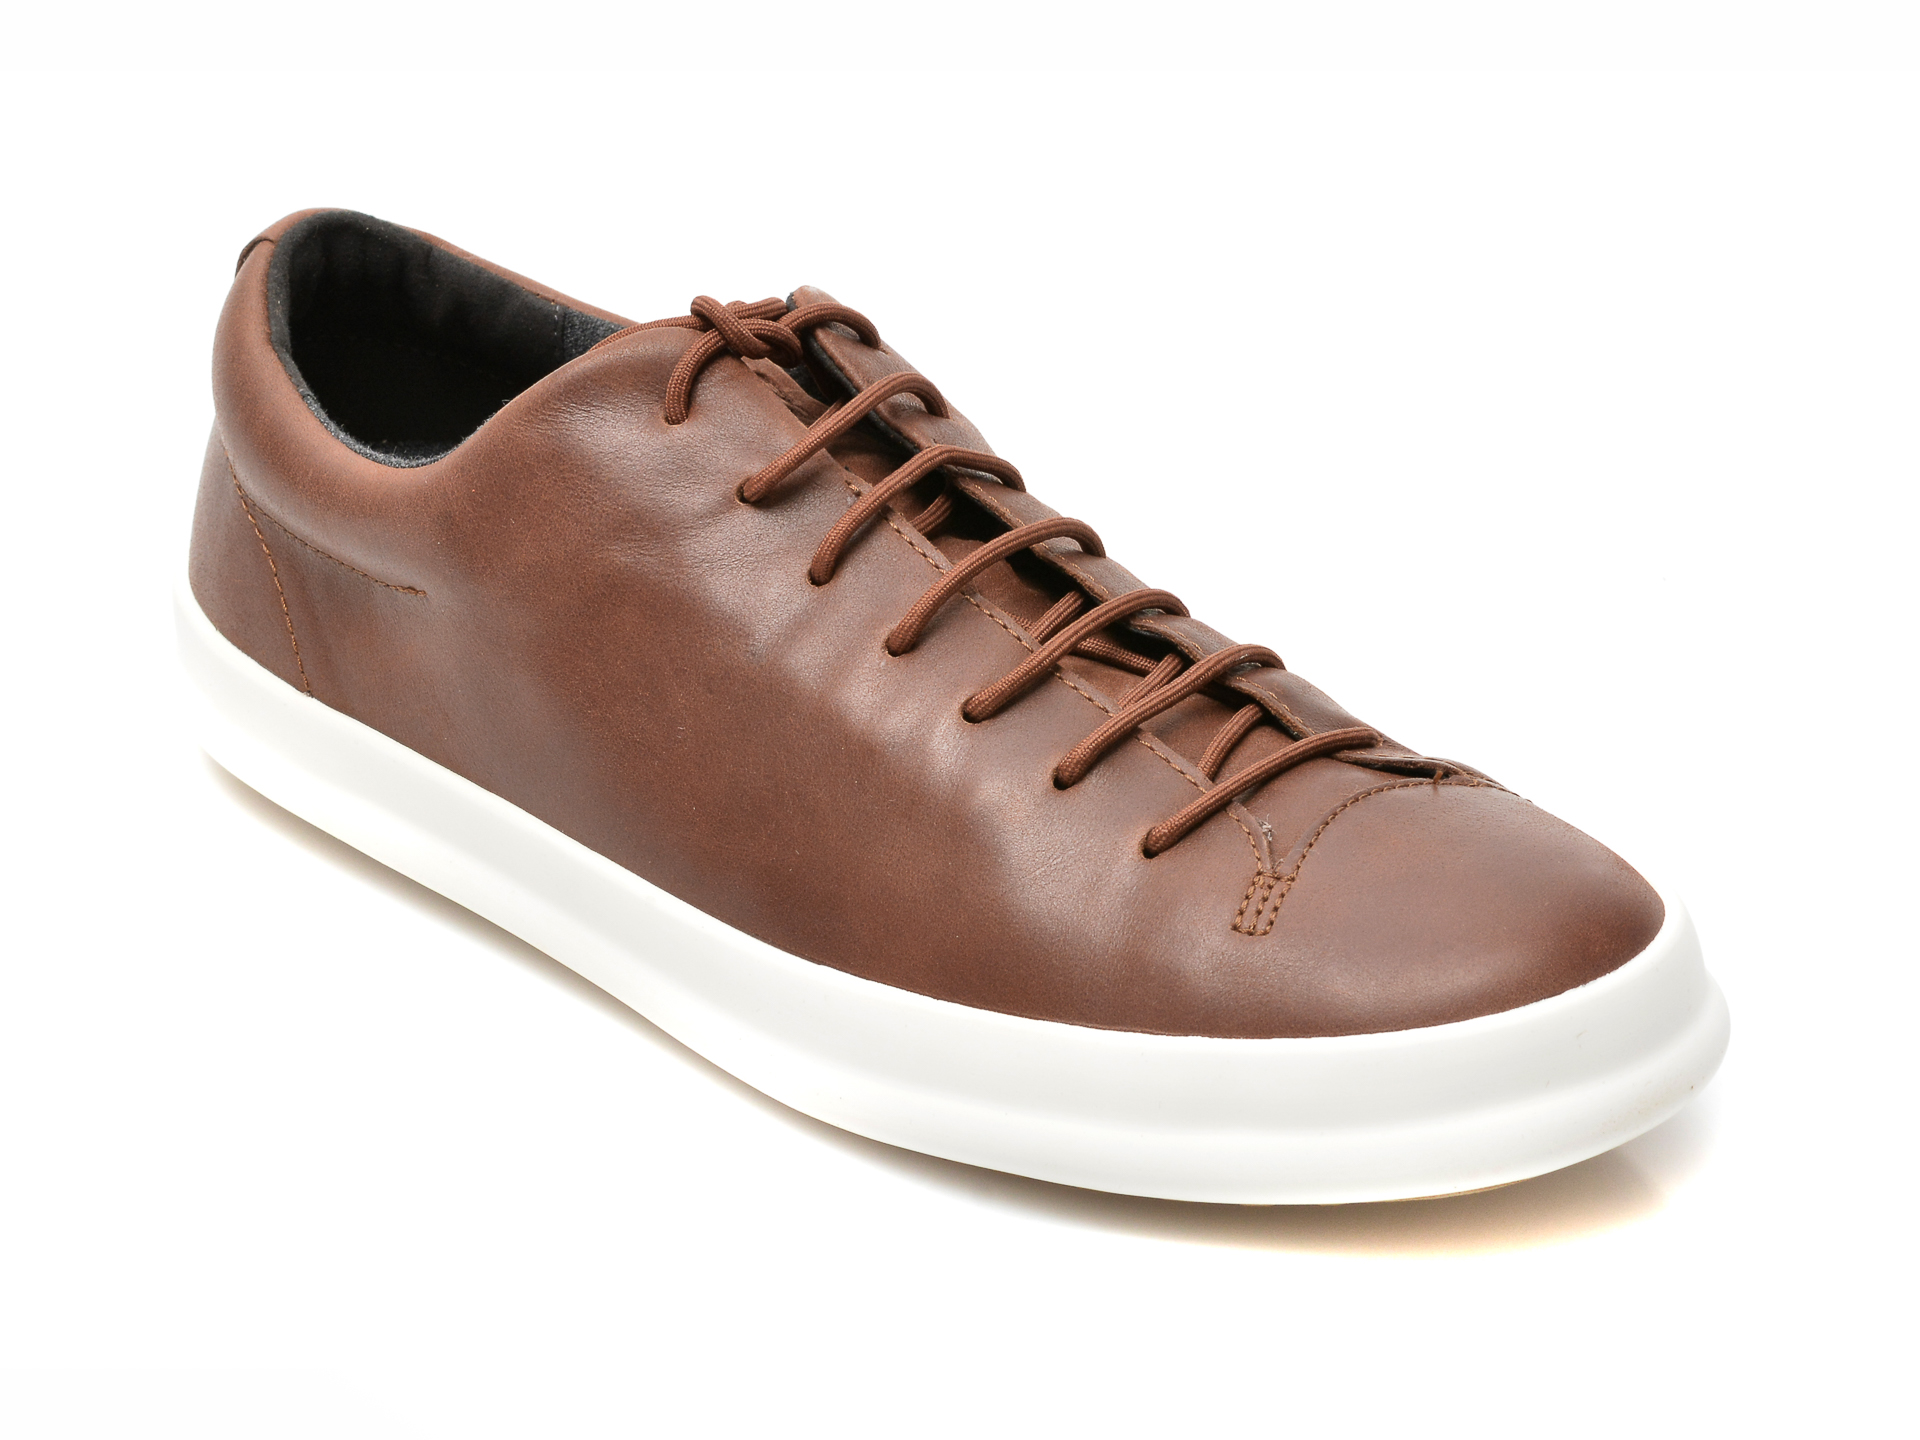 Pantofi CAMPER maro, K100373, din piele naturala Camper